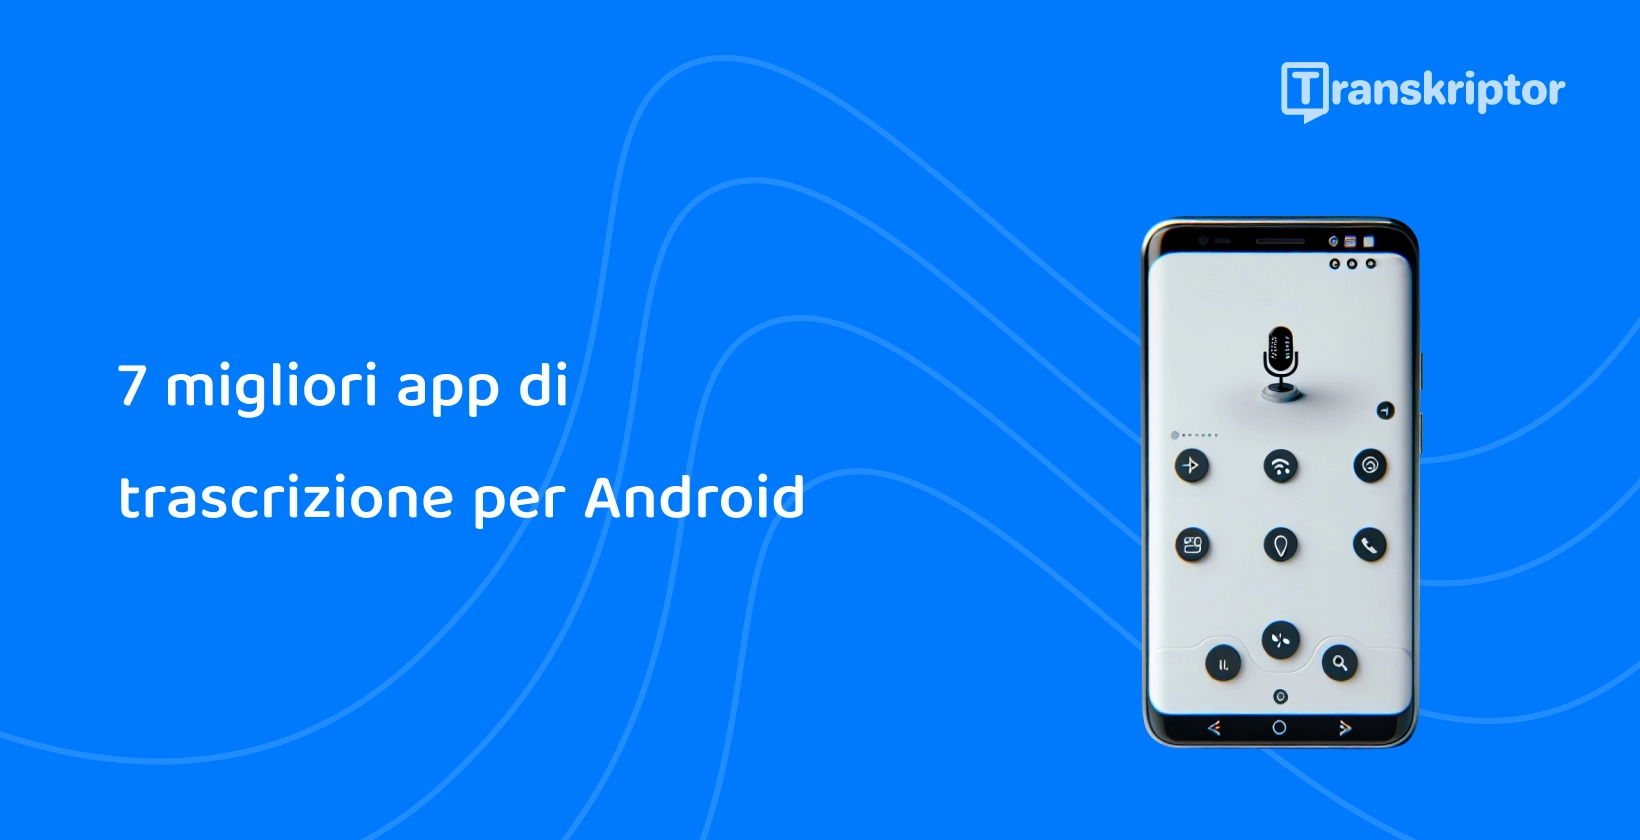 Telefono Android che visualizza il microfono per il riconoscimento vocale, che simboleggia le migliori app di trascrizione per Android.